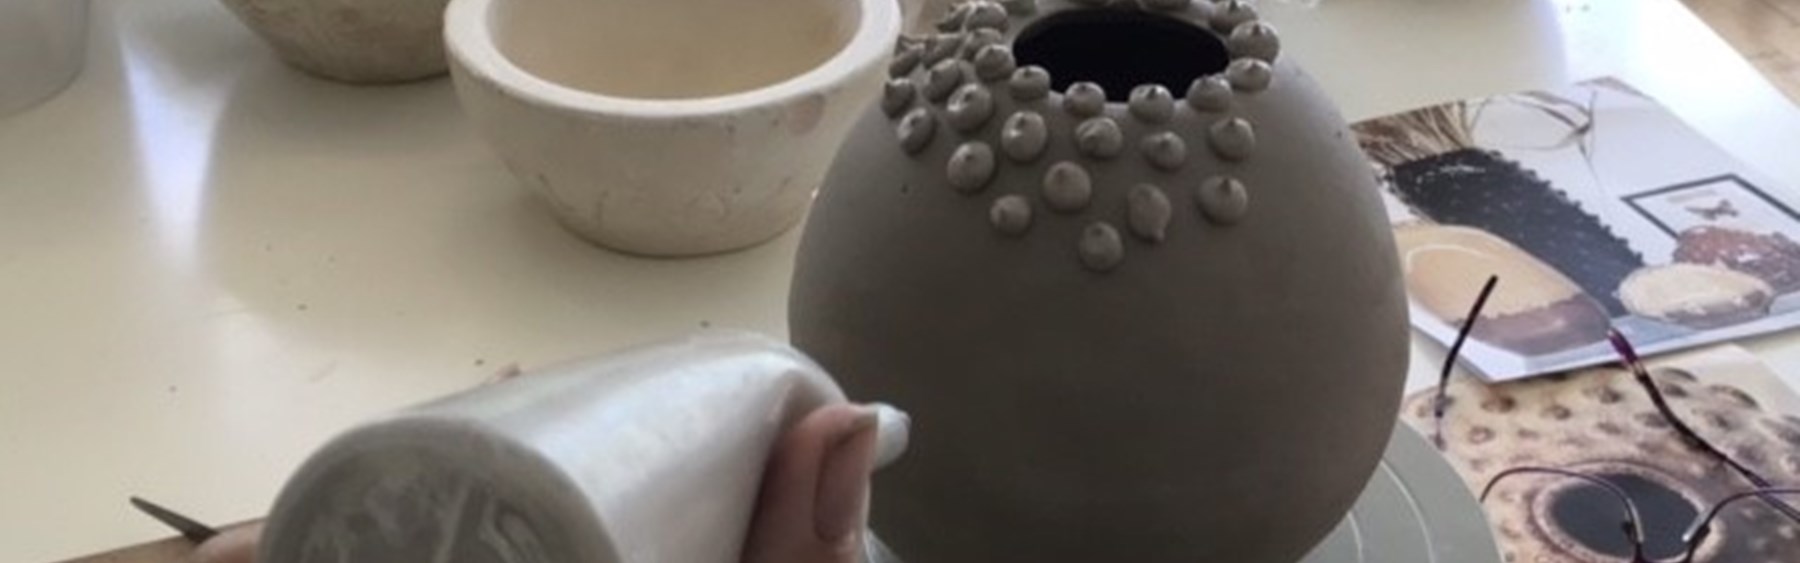 Keramikkrukke, der ikke er færdig endnu. En person er ved at lave små prikker med ler på krukken.